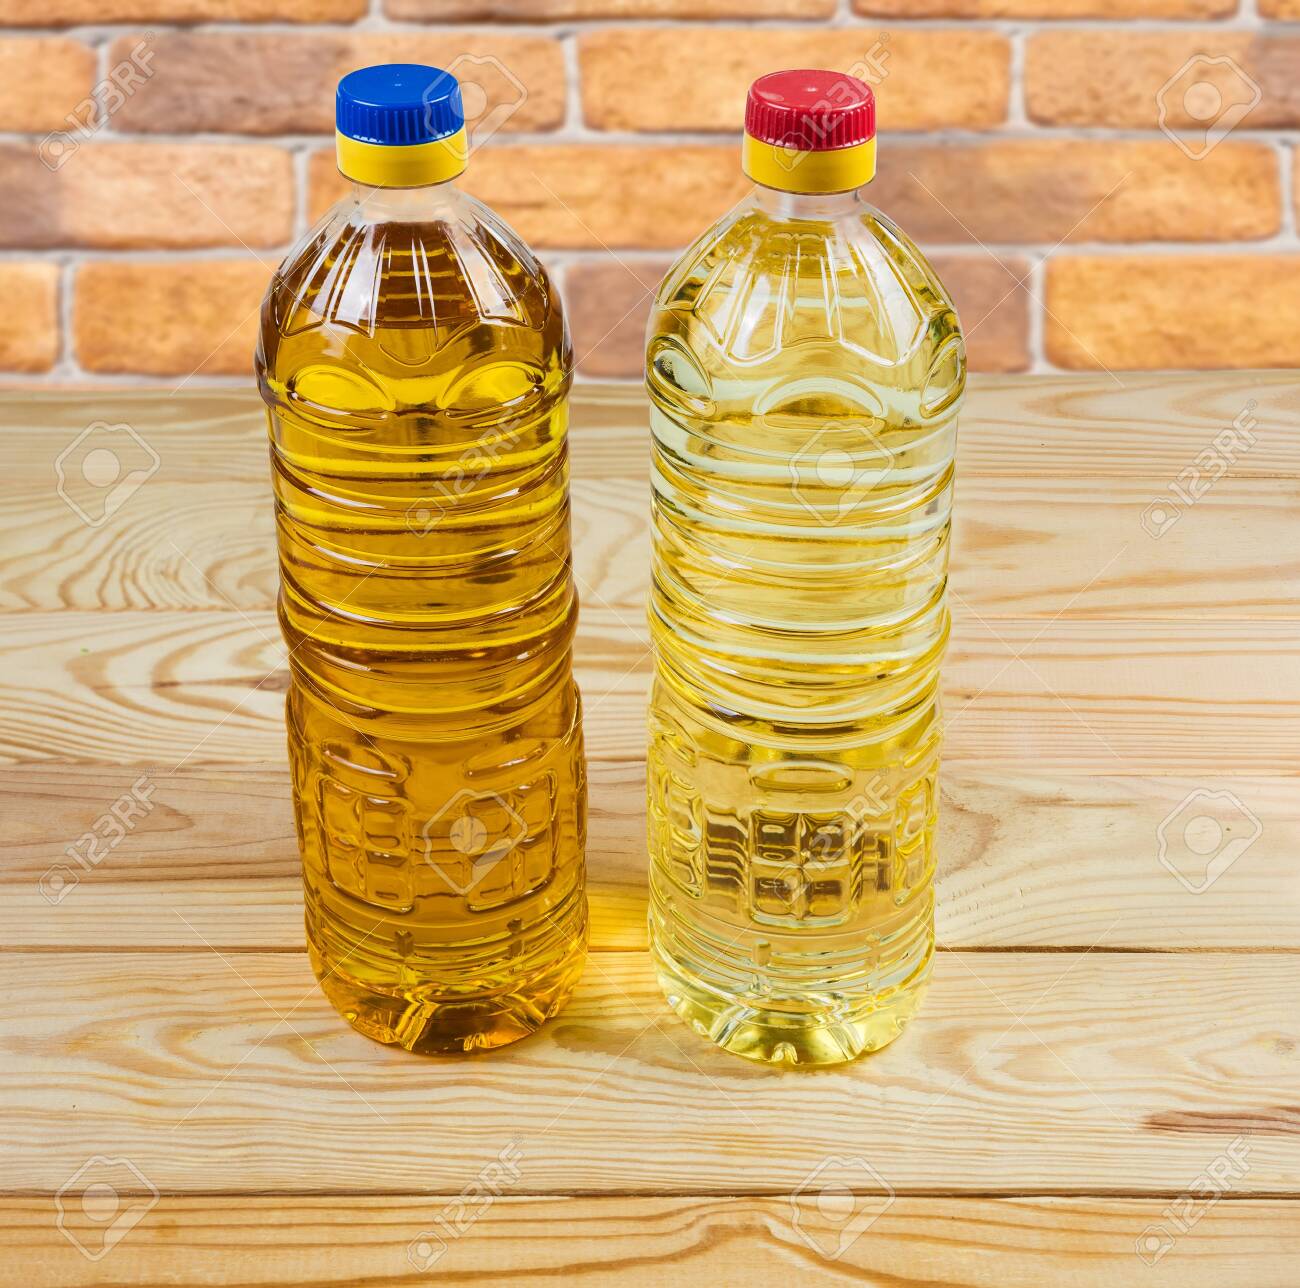 sunfloer oil